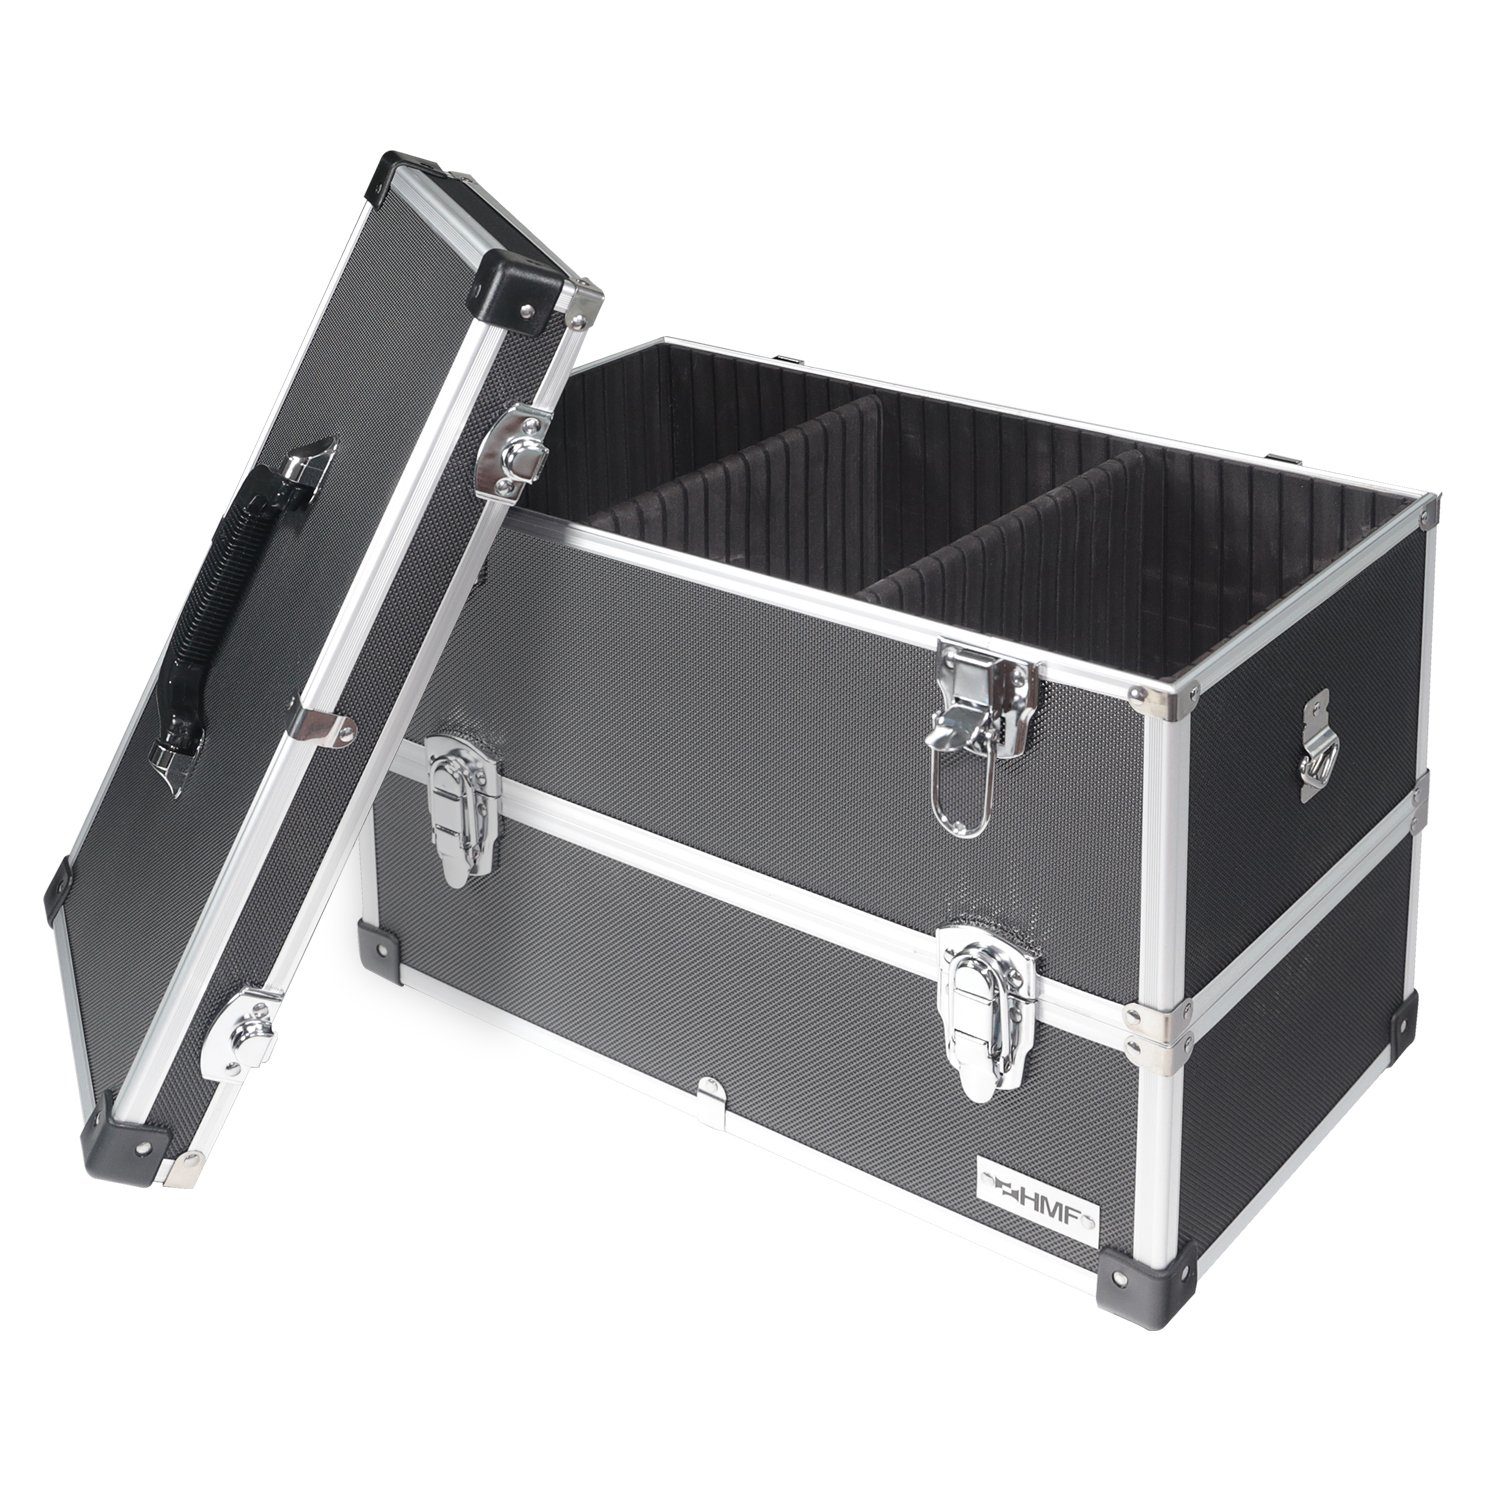 HMF Werkzeugkoffer geräumiger Utensilien Trennwänden, Sachen 44x32,5x24 cm mit Koffer für Kosmetik, Werkzeug, Angel Transportkoffer und